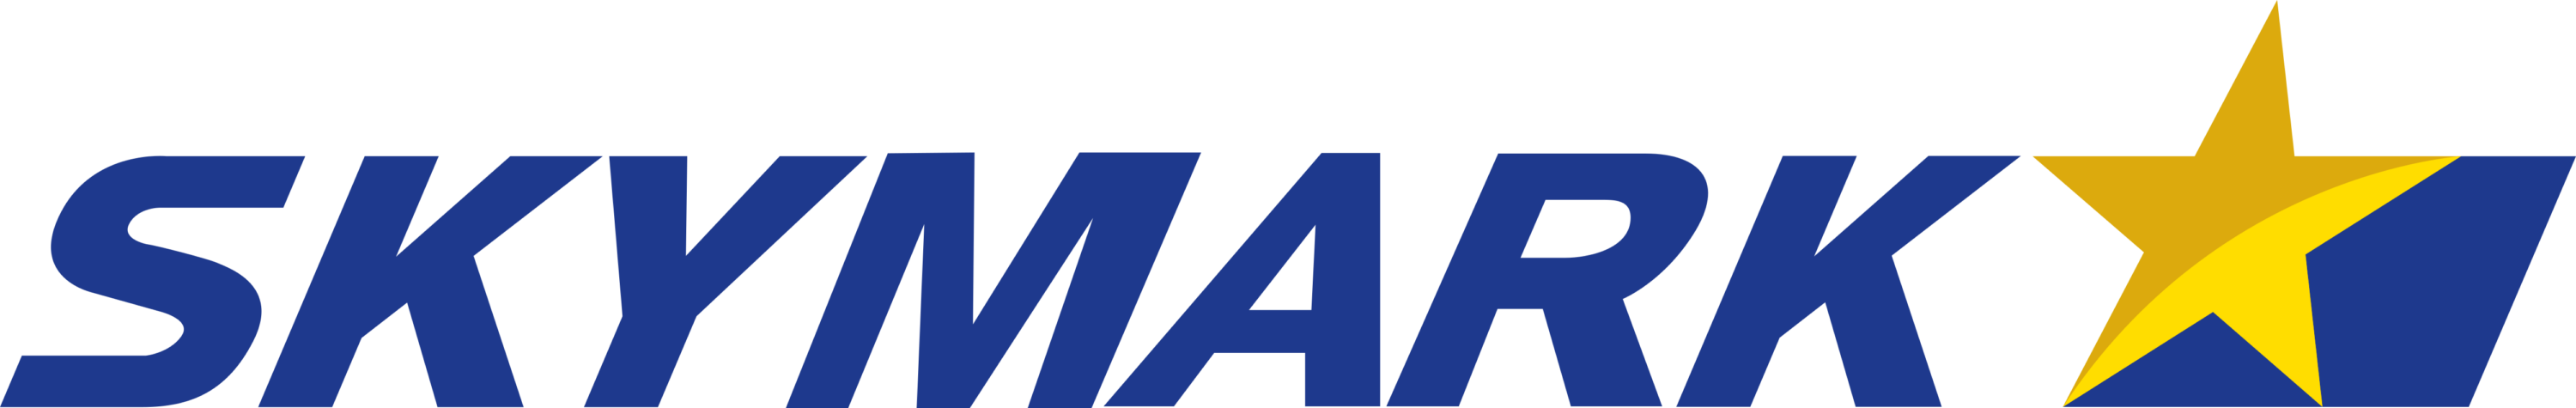 Skymark Airlines Logo